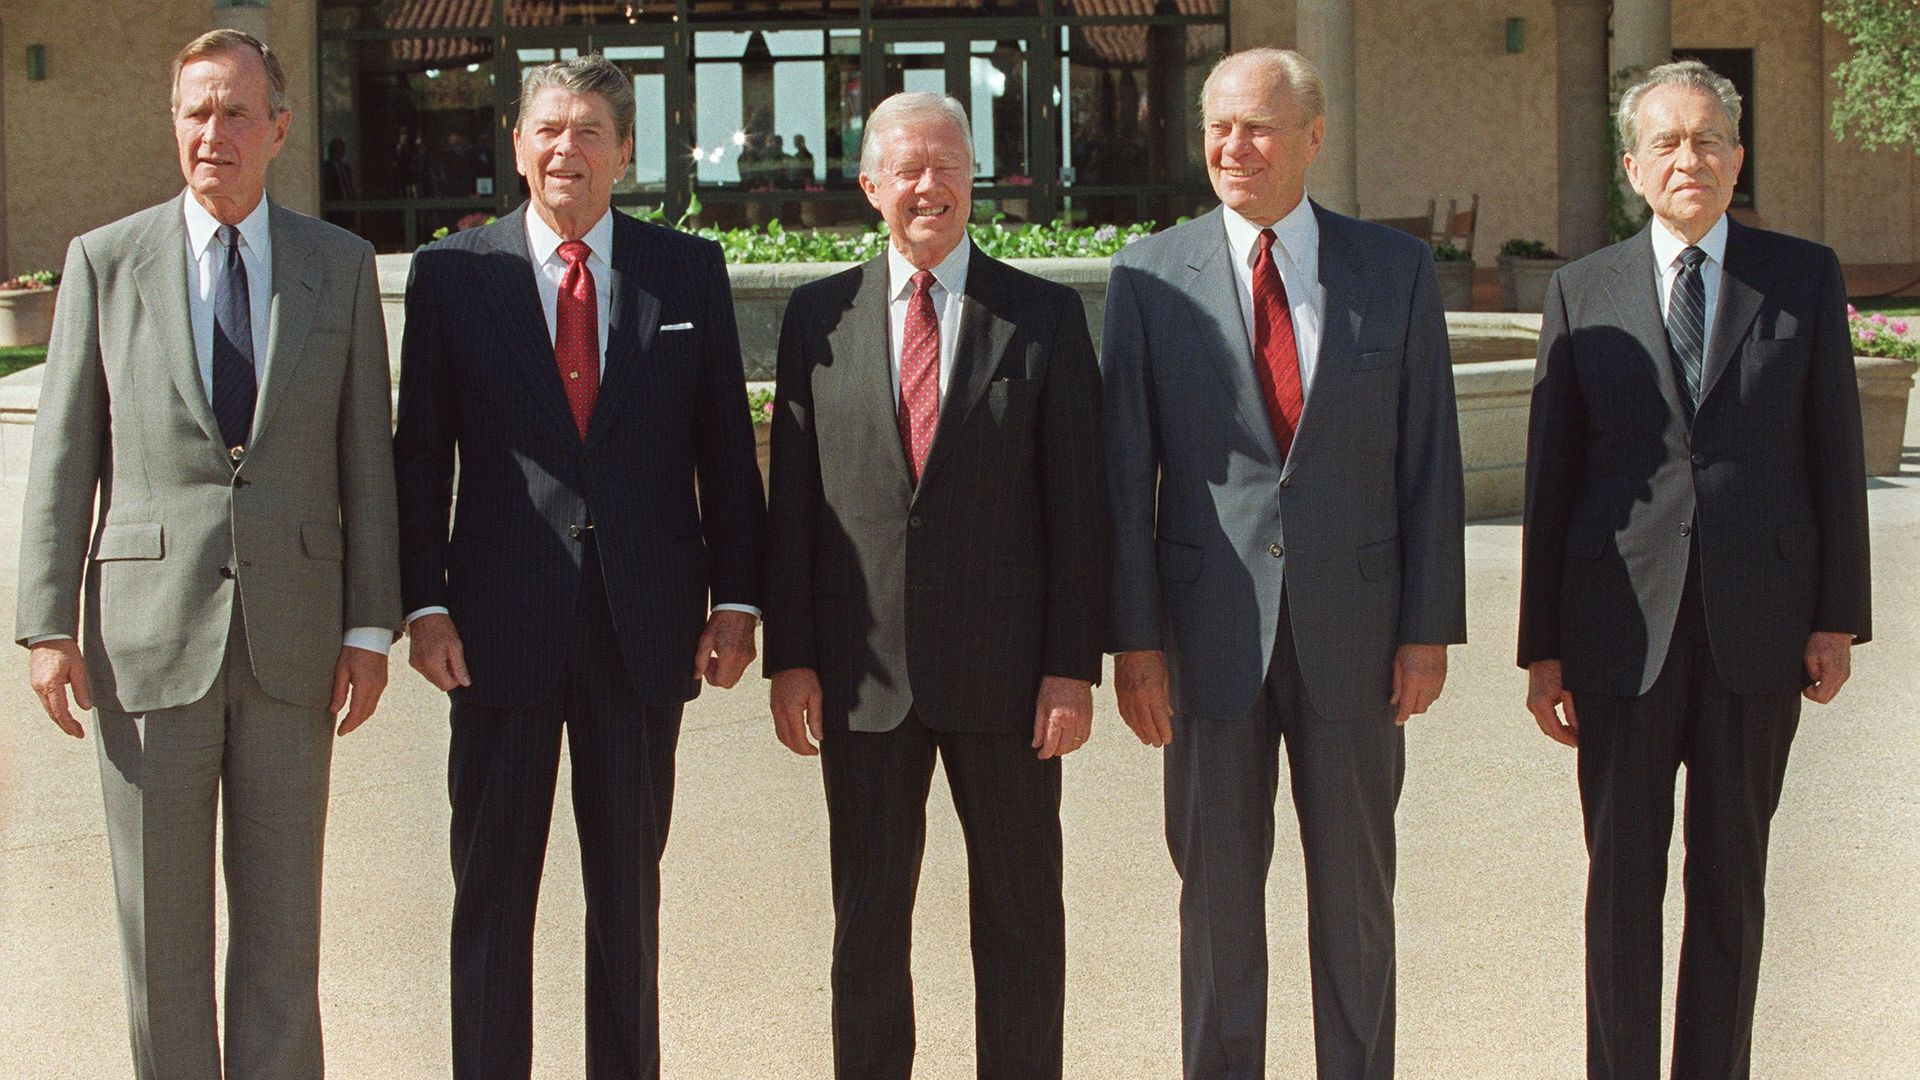 Les présidents des décennies 70-80, à savoir, de gauche à droite, G. Bush, R. Reagan, J. Carter, G. Ford et R. Nixon (photo de 1991) 